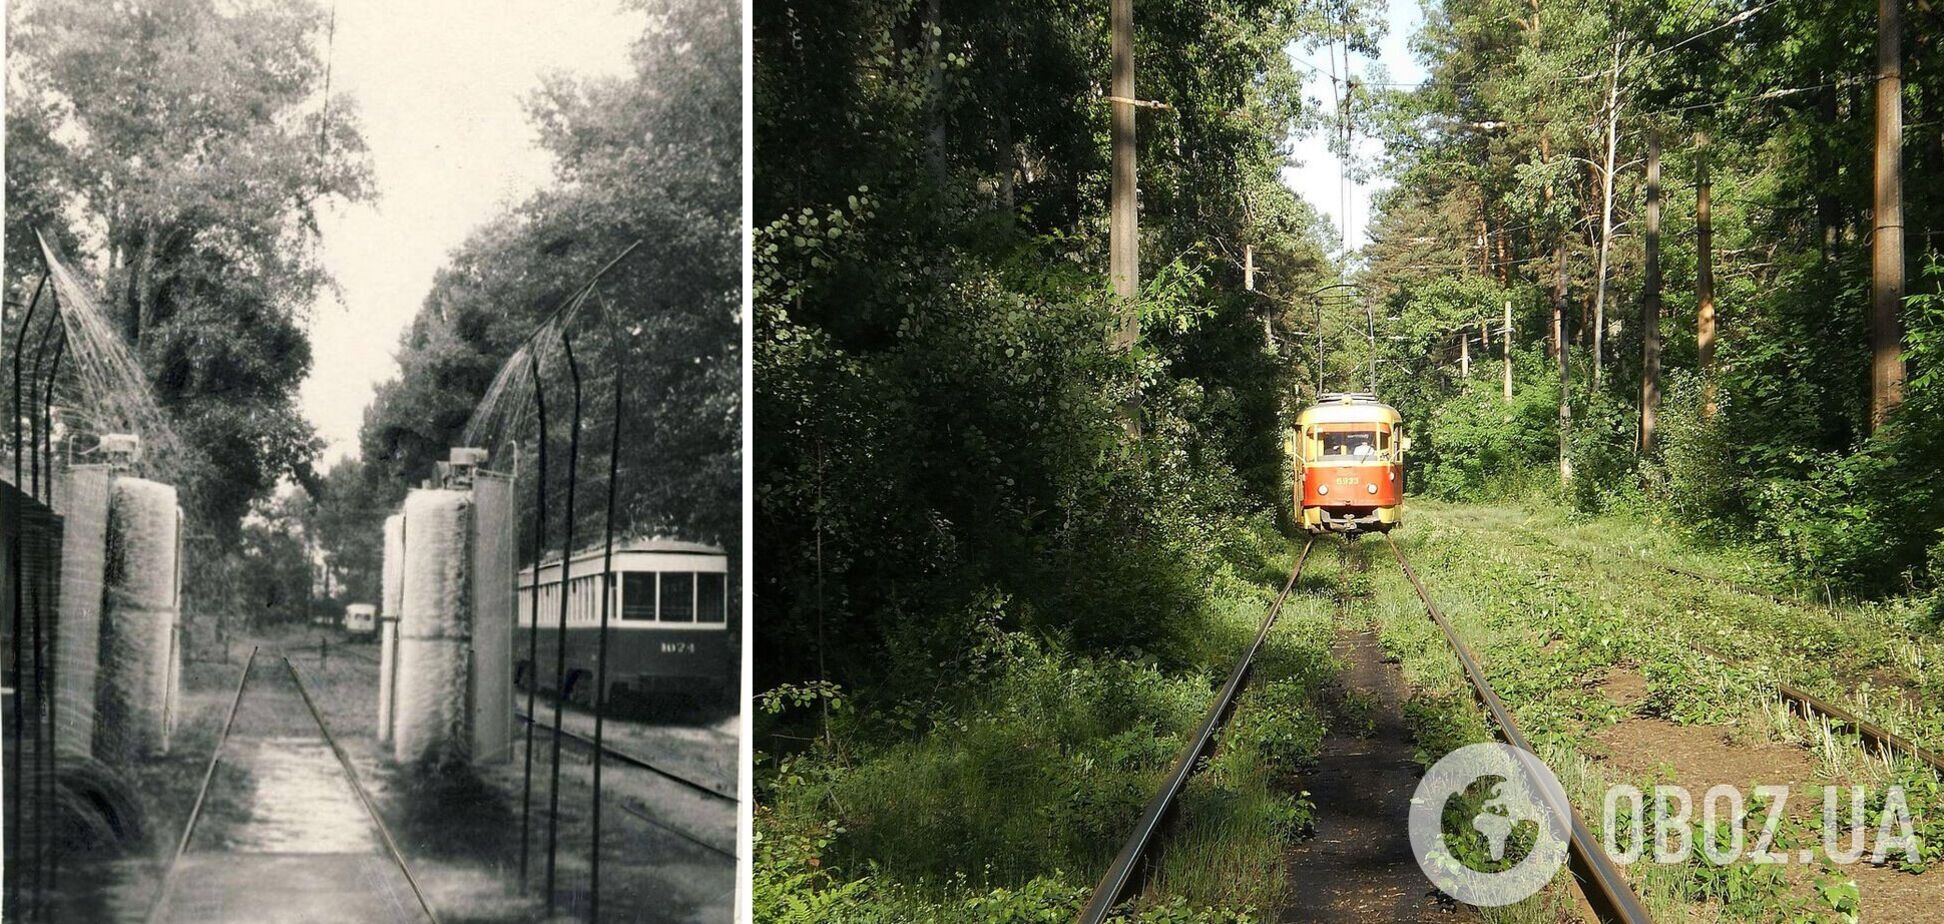 Эта трамвайная линия работает уже более 120 лет